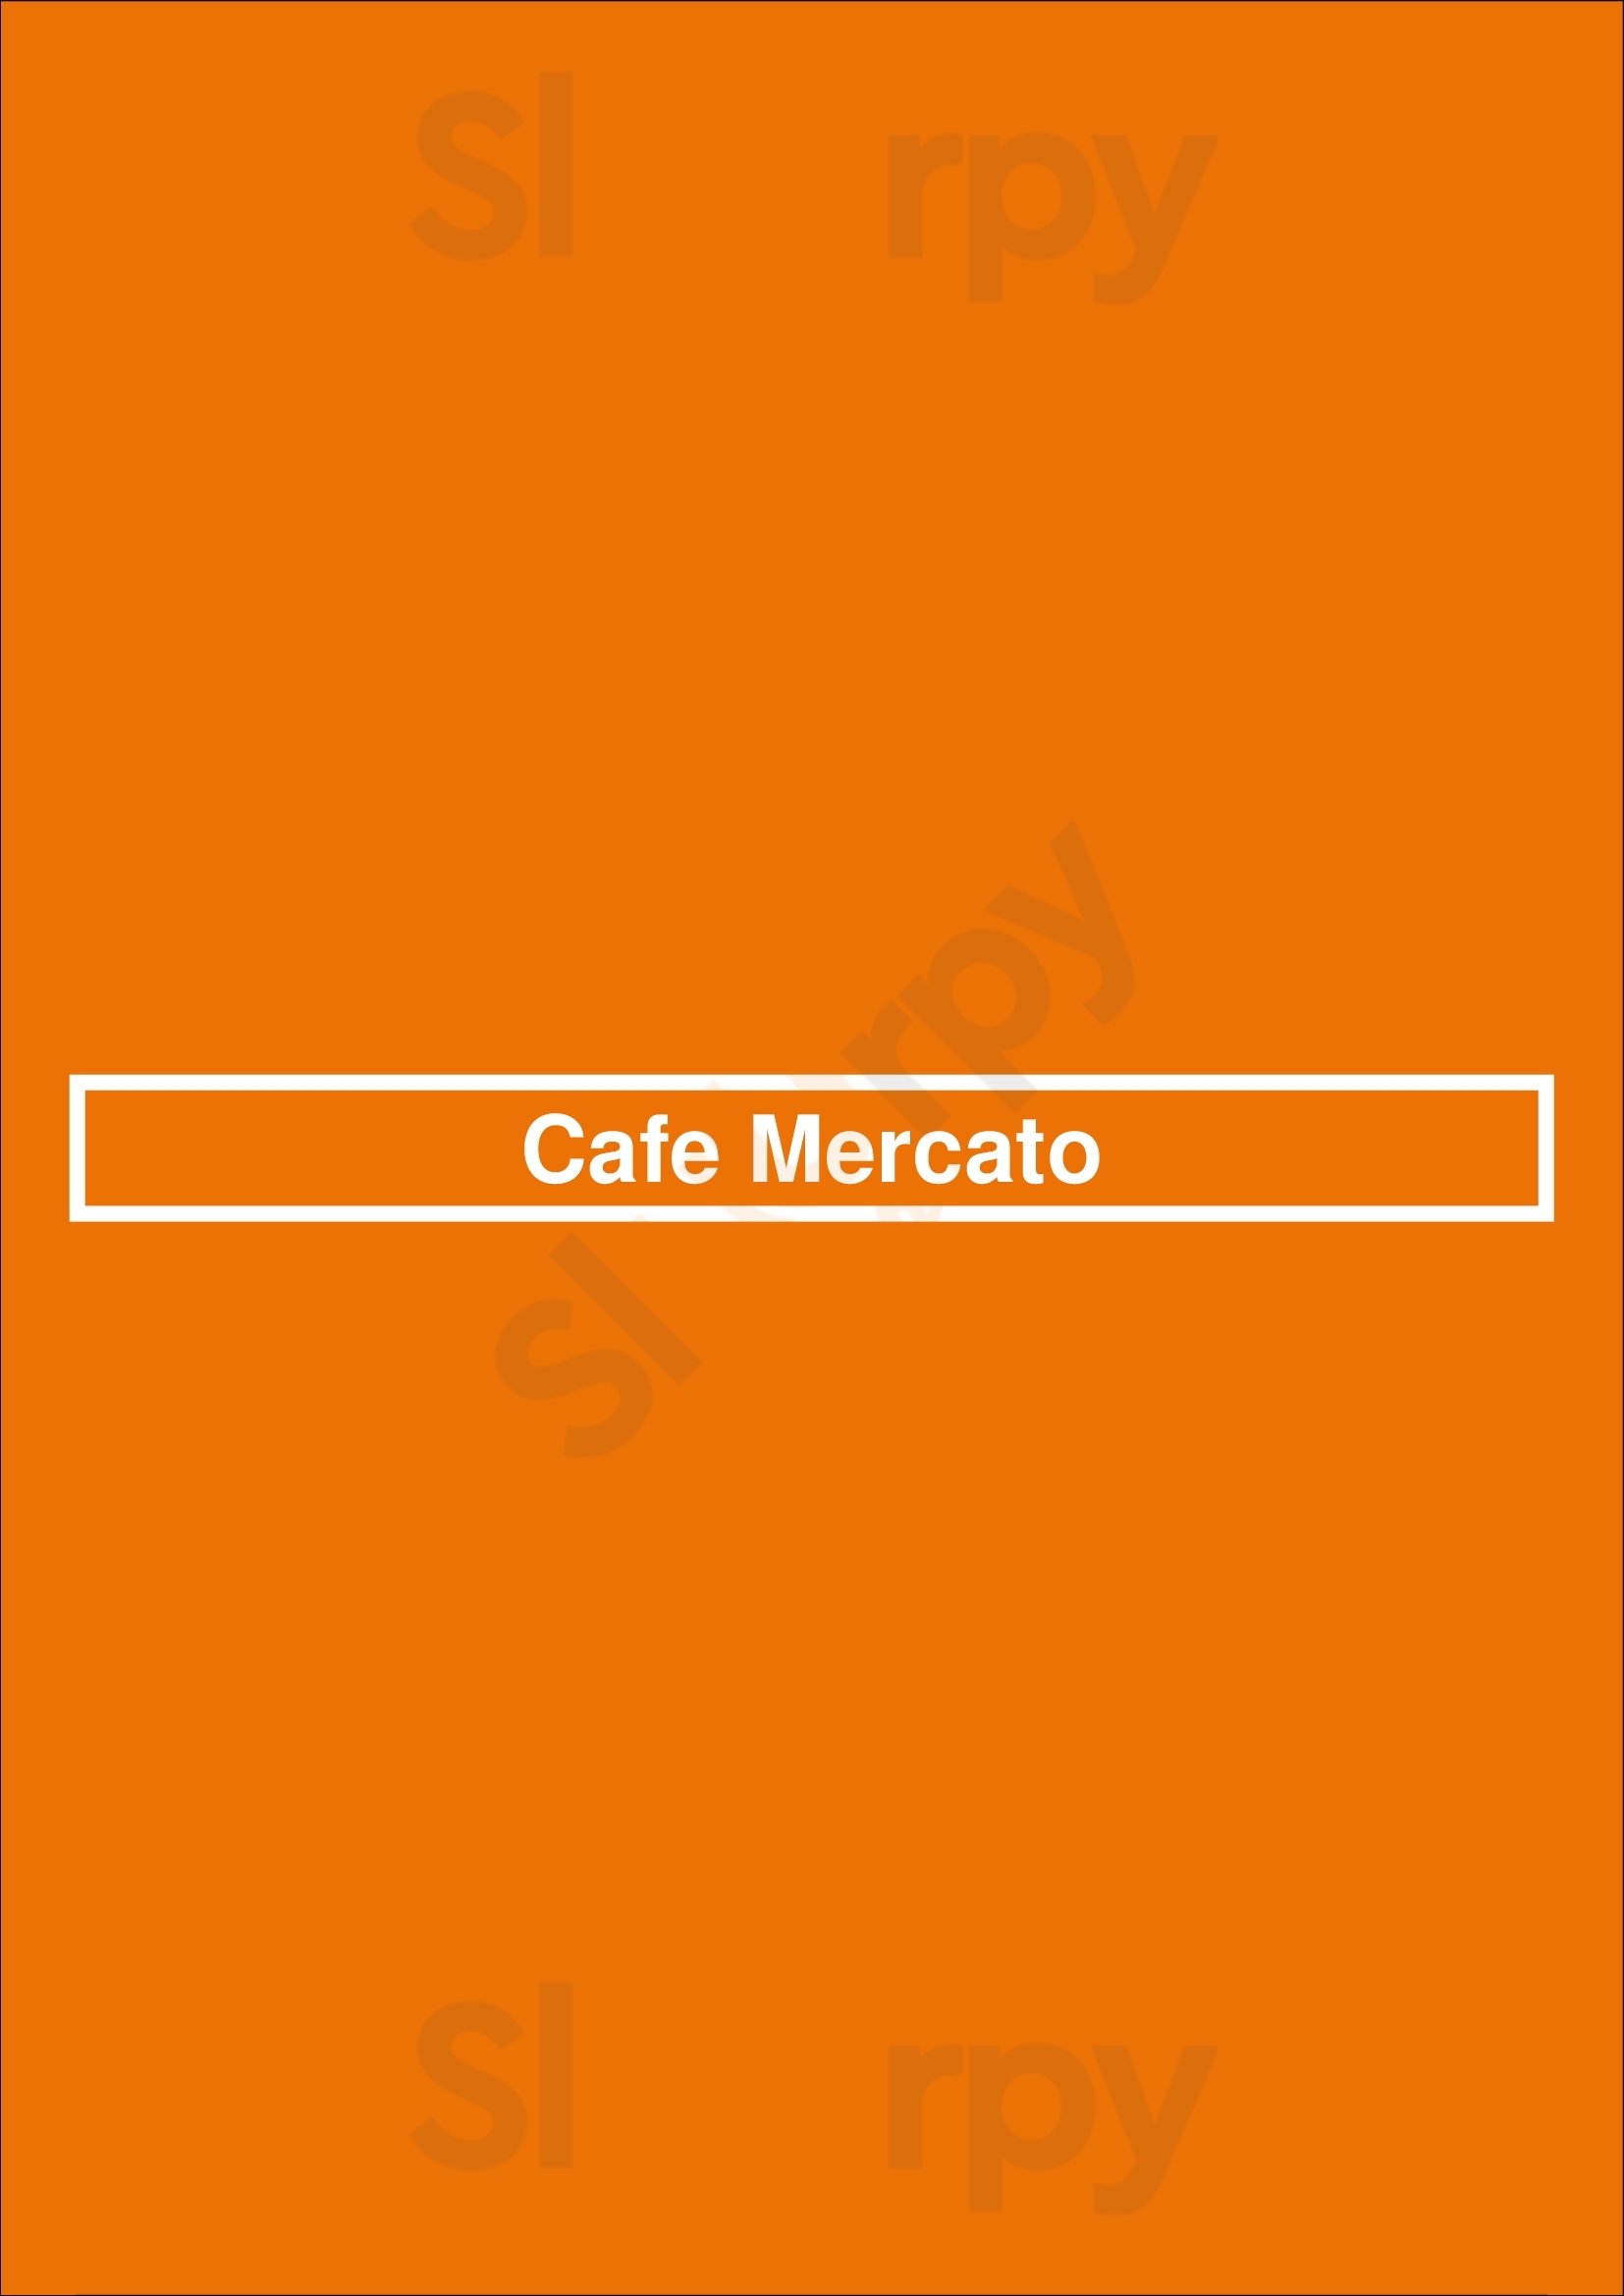 Cafe Mercato Denver Menu - 1